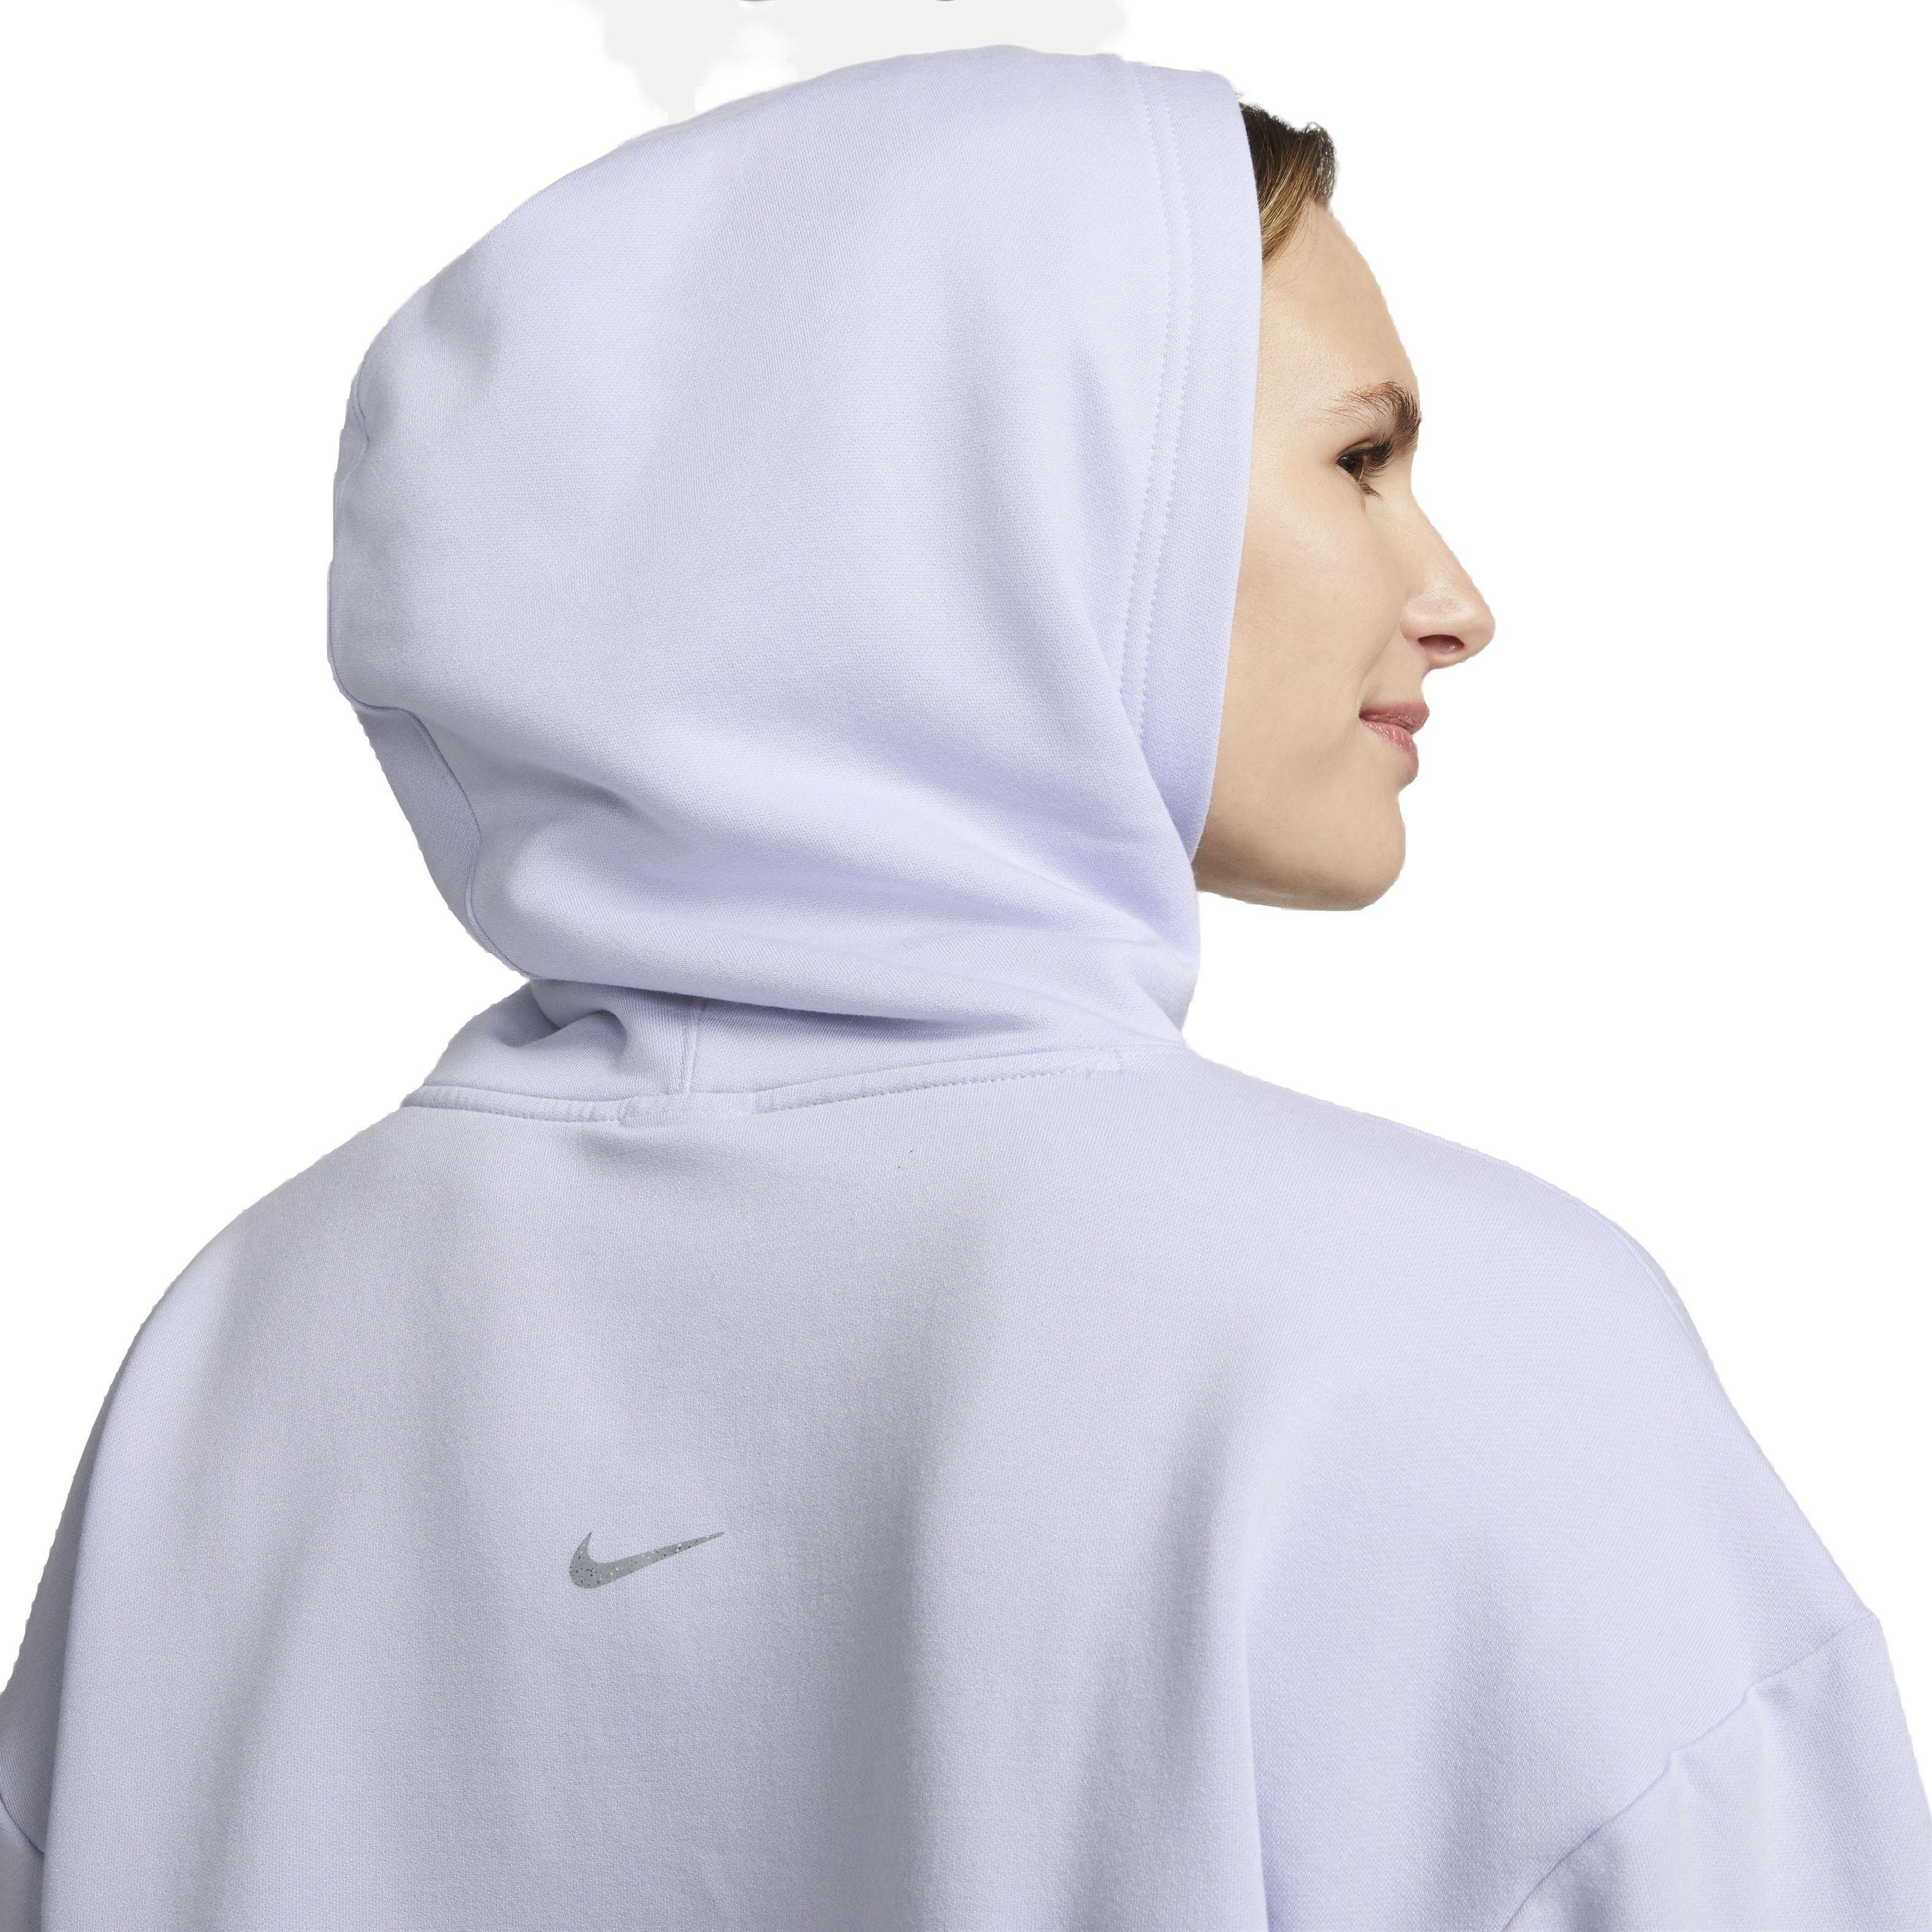 Nike Women's Sportswear Club Fleece Crop Oversized Pullover Hoodie-Purple -  Hibbett